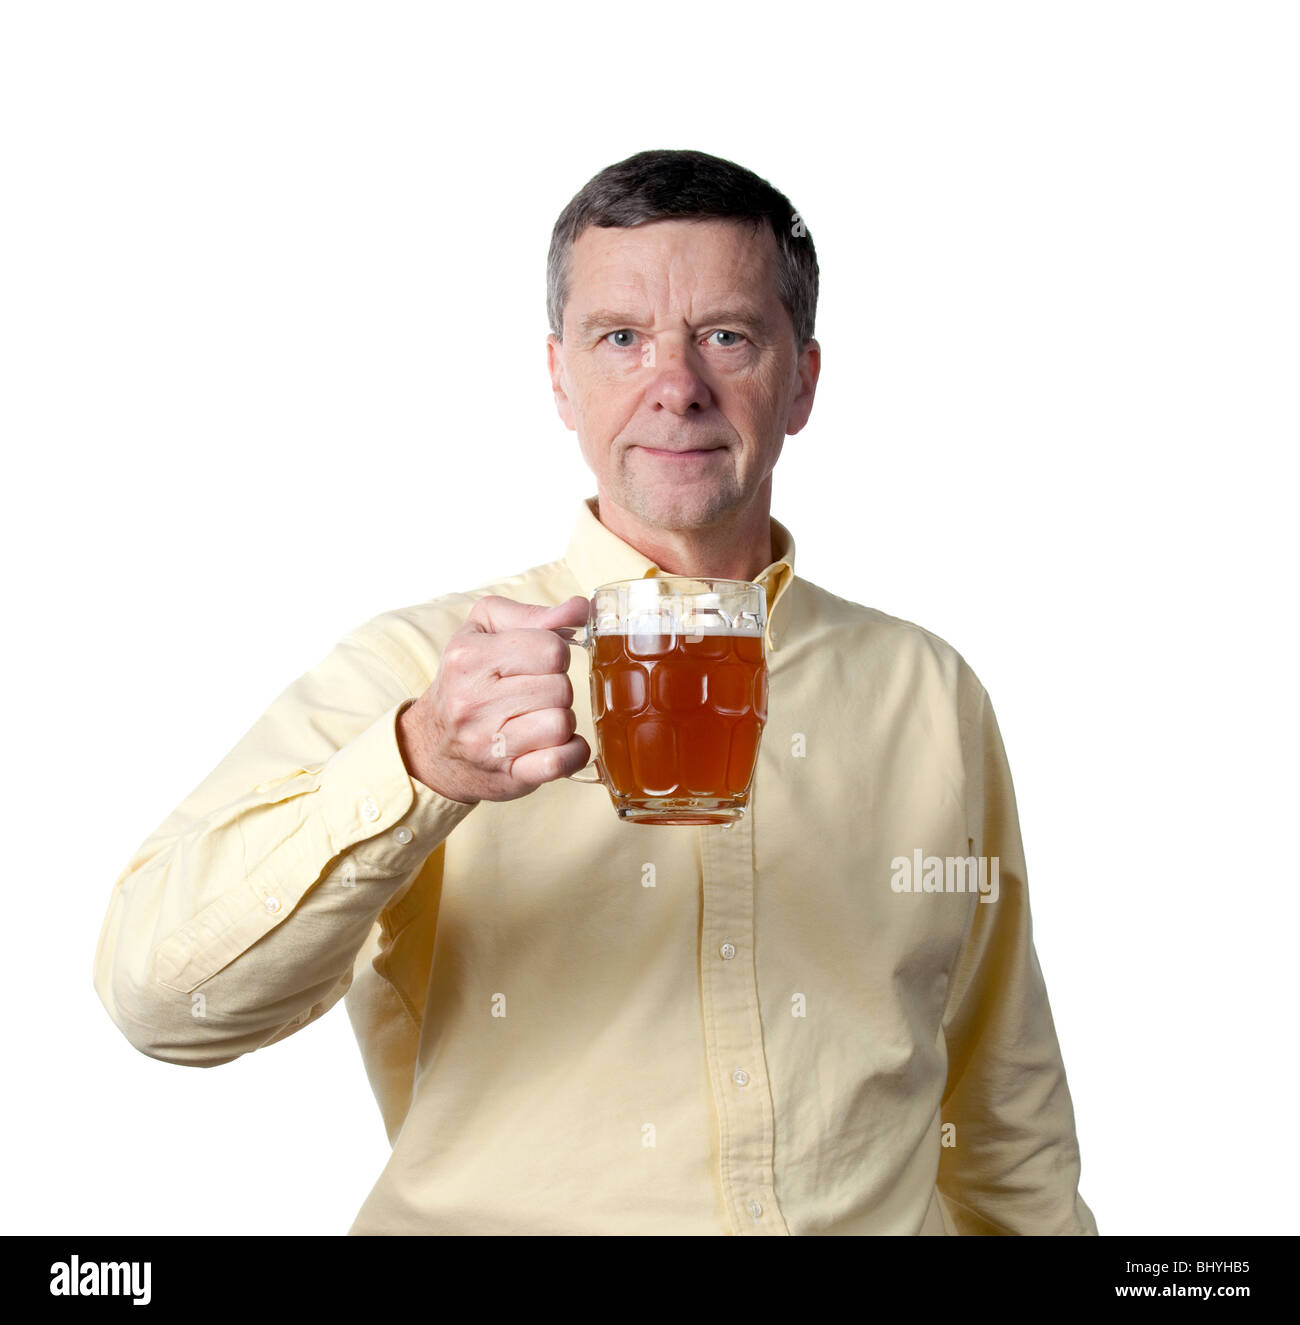 Senior maschili in possesso di una pinta tradizionale bicchiere riempito parzialmente con golden ale colorata o birra e sollevando il vetro Foto Stock